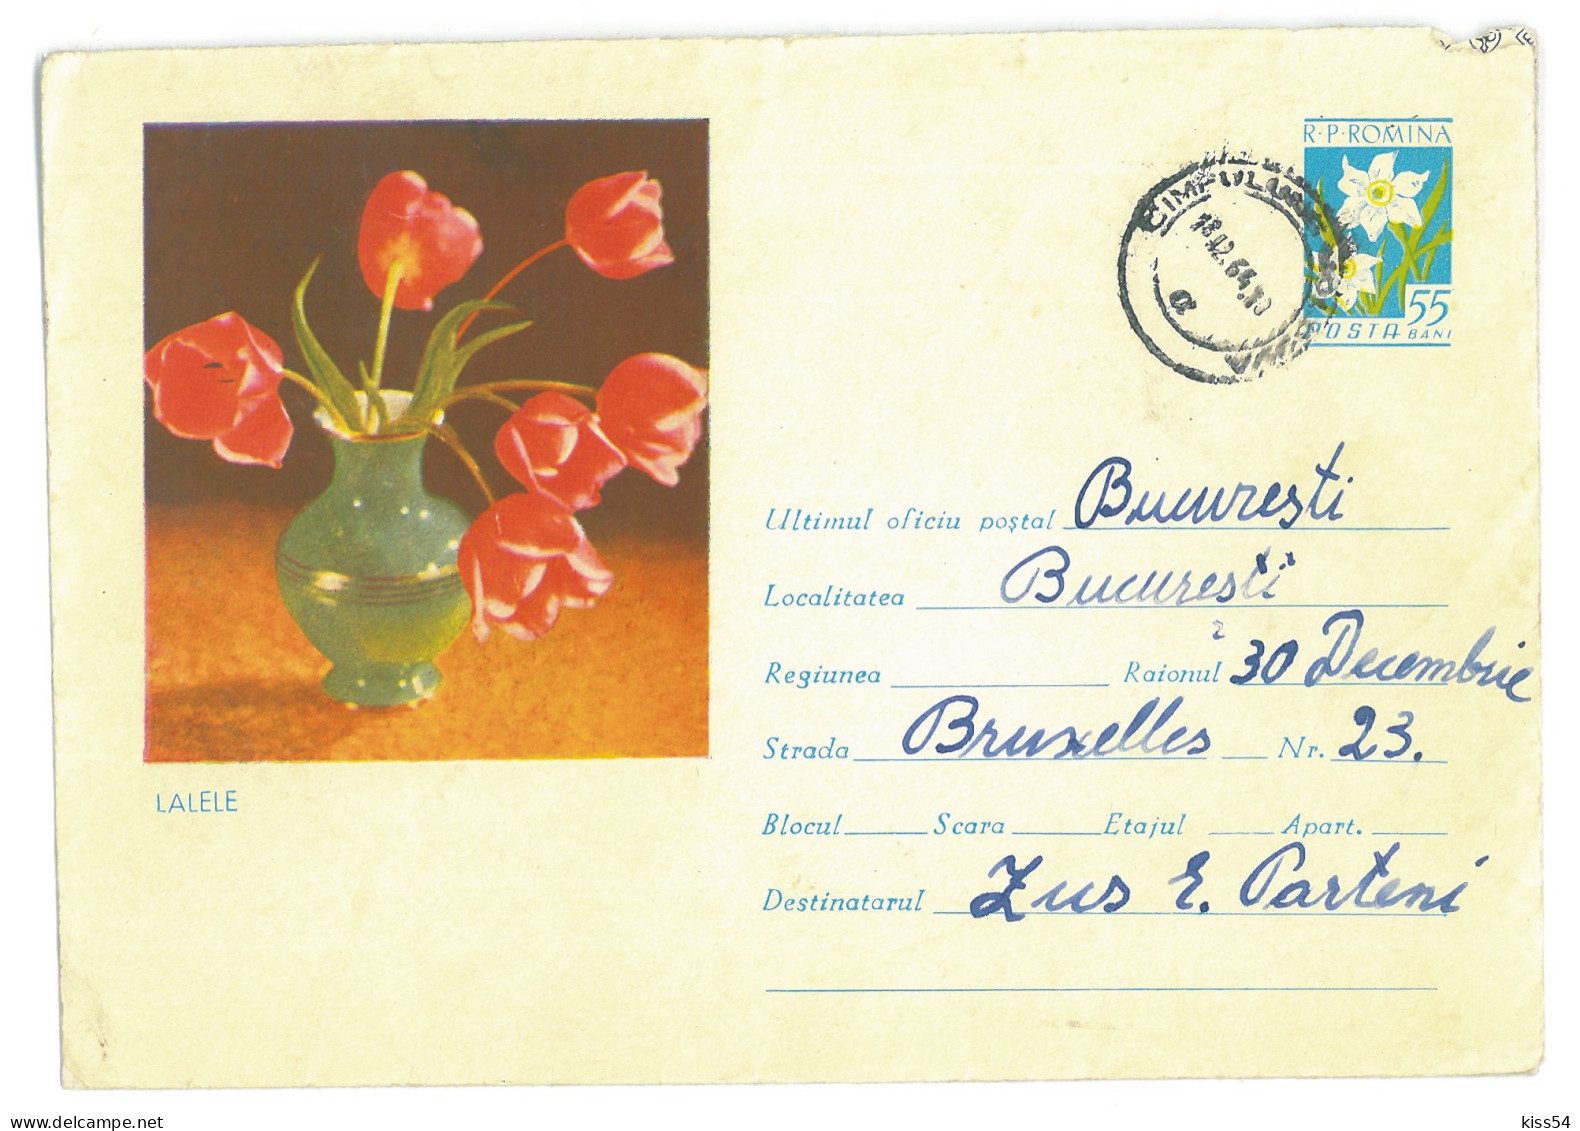 IP 63 - 0158c FLOWERS, Lalele, Romania - Stationery - Used - 1963 - Interi Postali